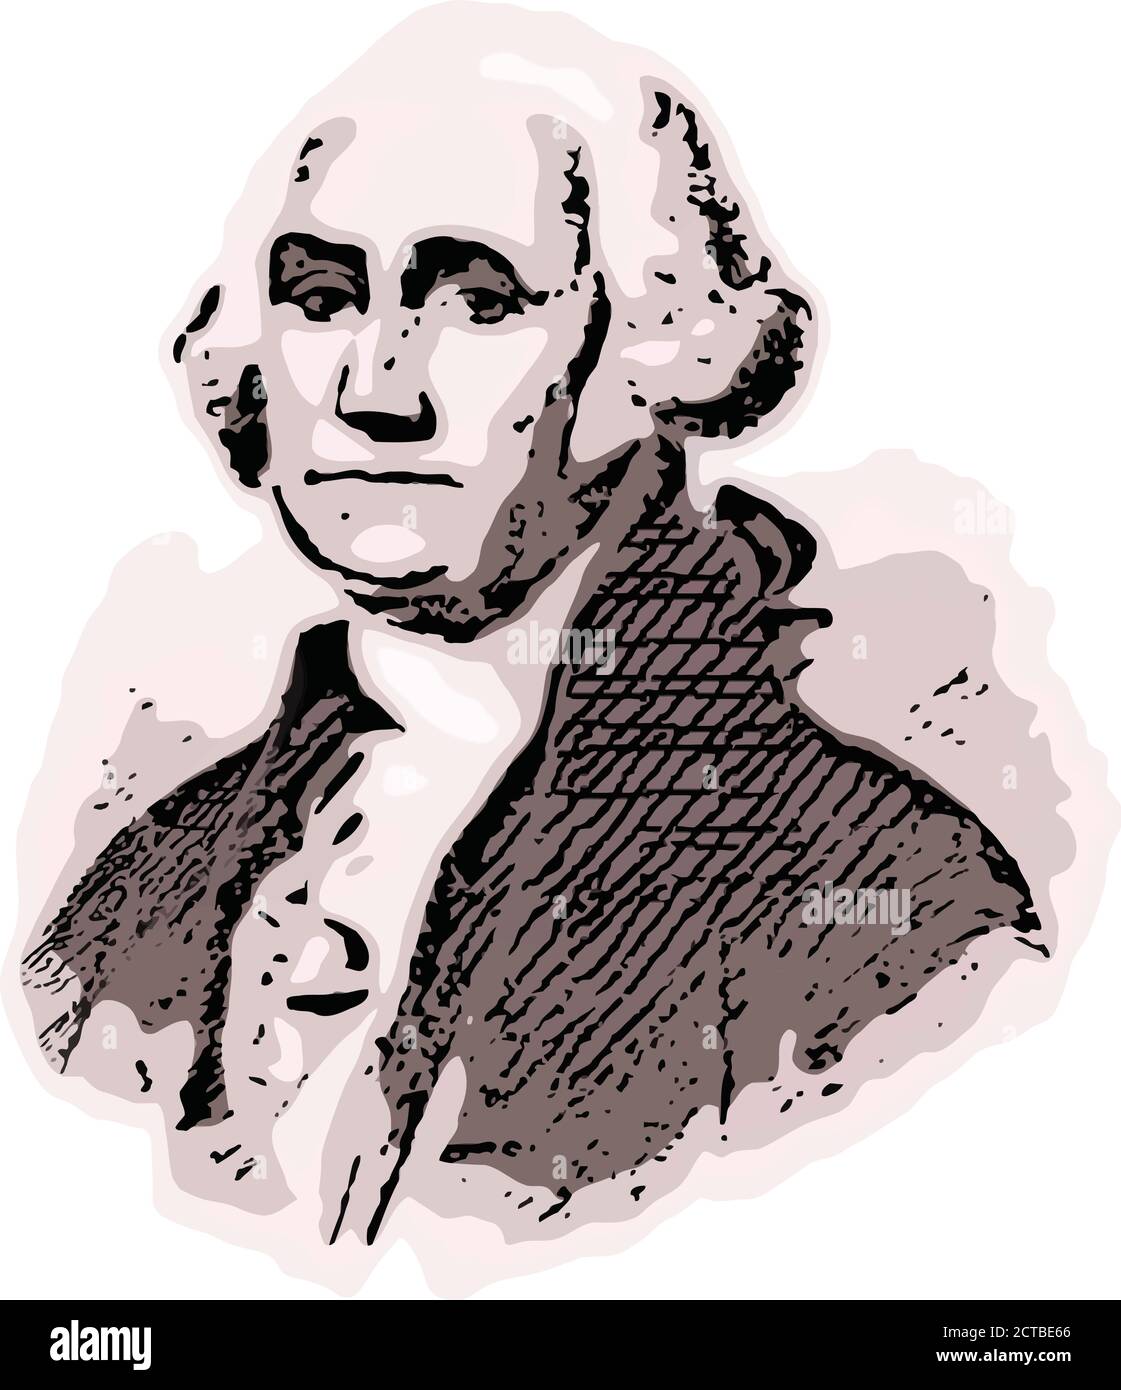 Ritratto vettoriale del presidente George Washington. George Washington (1732 – 1799) è stato un Illustrazione Vettoriale